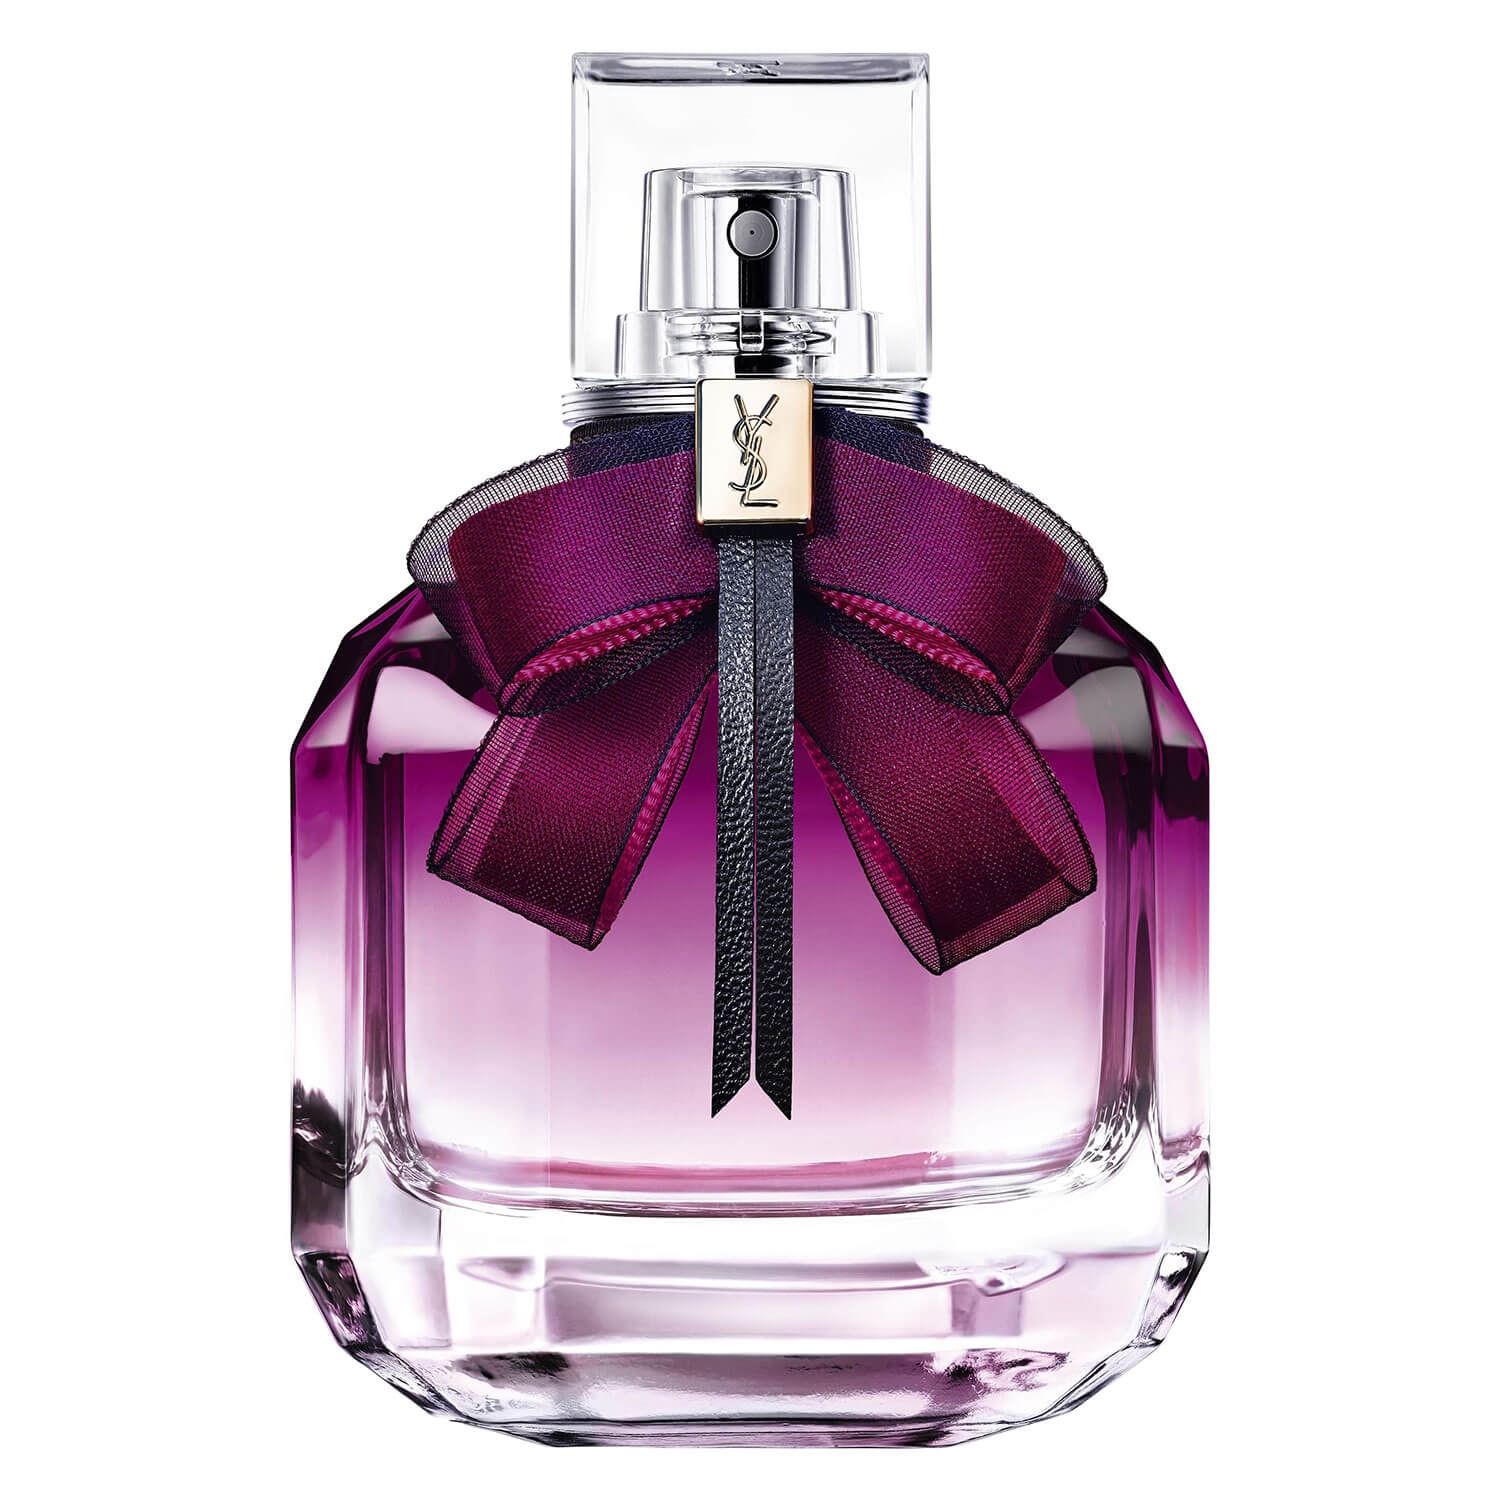 Produktbild von Mon Paris - Eau de Parfum Intensément